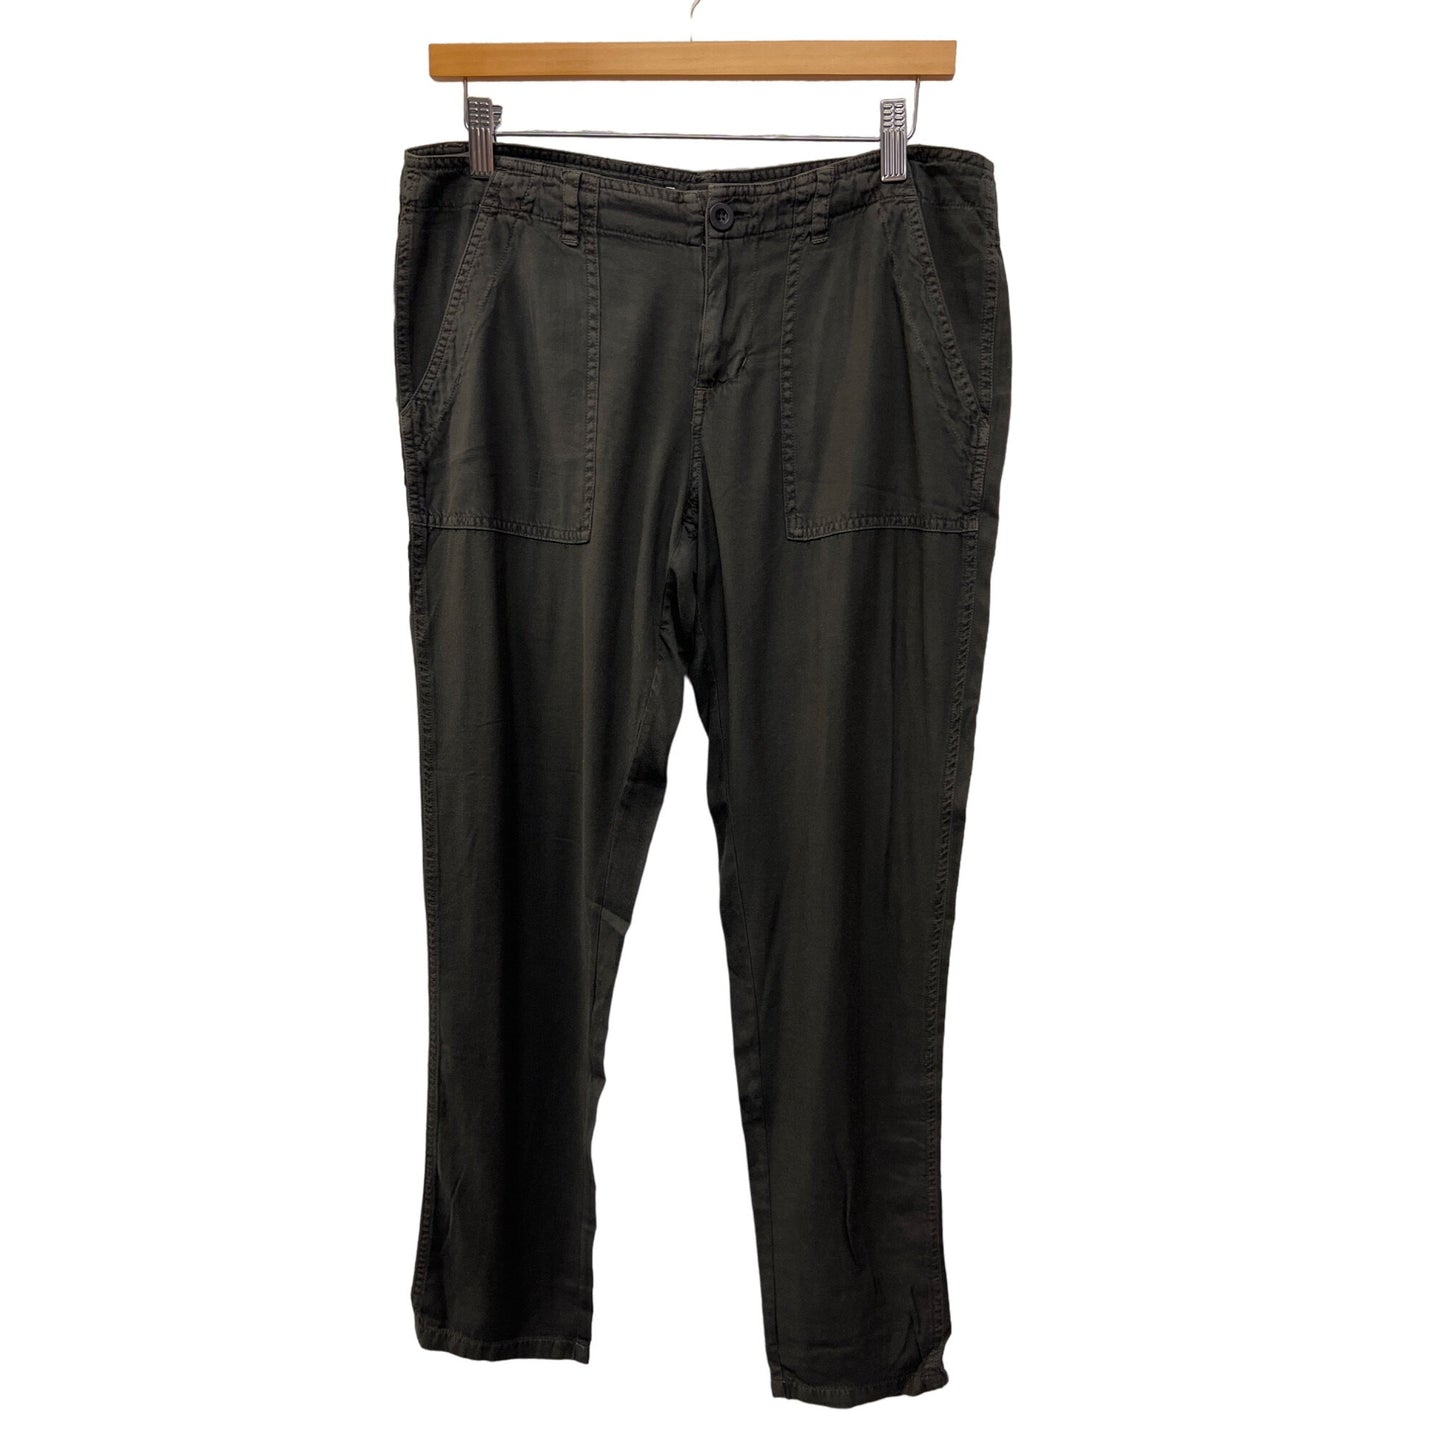 Billabong NWT Lightweight Gray Cotton Cargo Pants